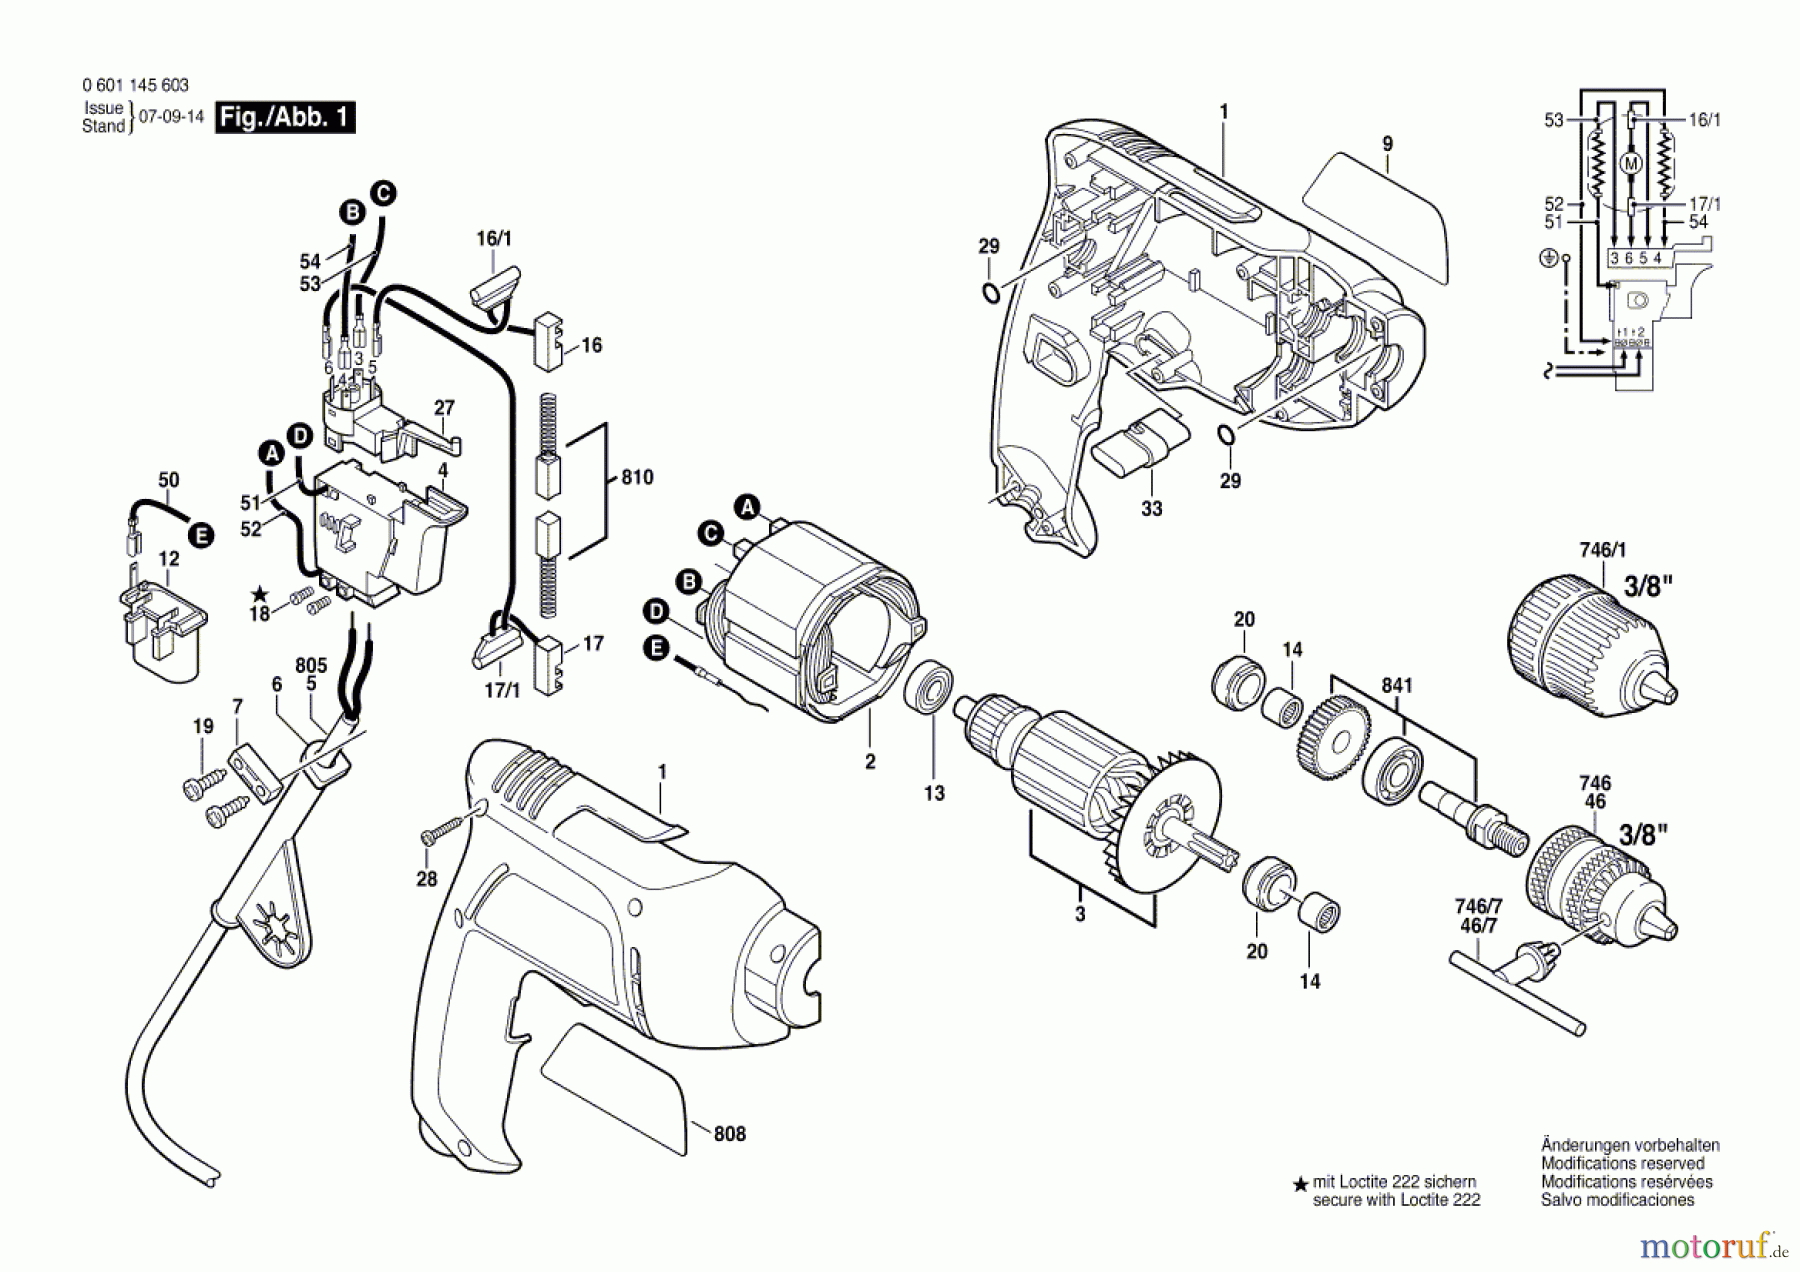  Bosch Werkzeug Bohrmaschine GBM 6 RE Seite 1